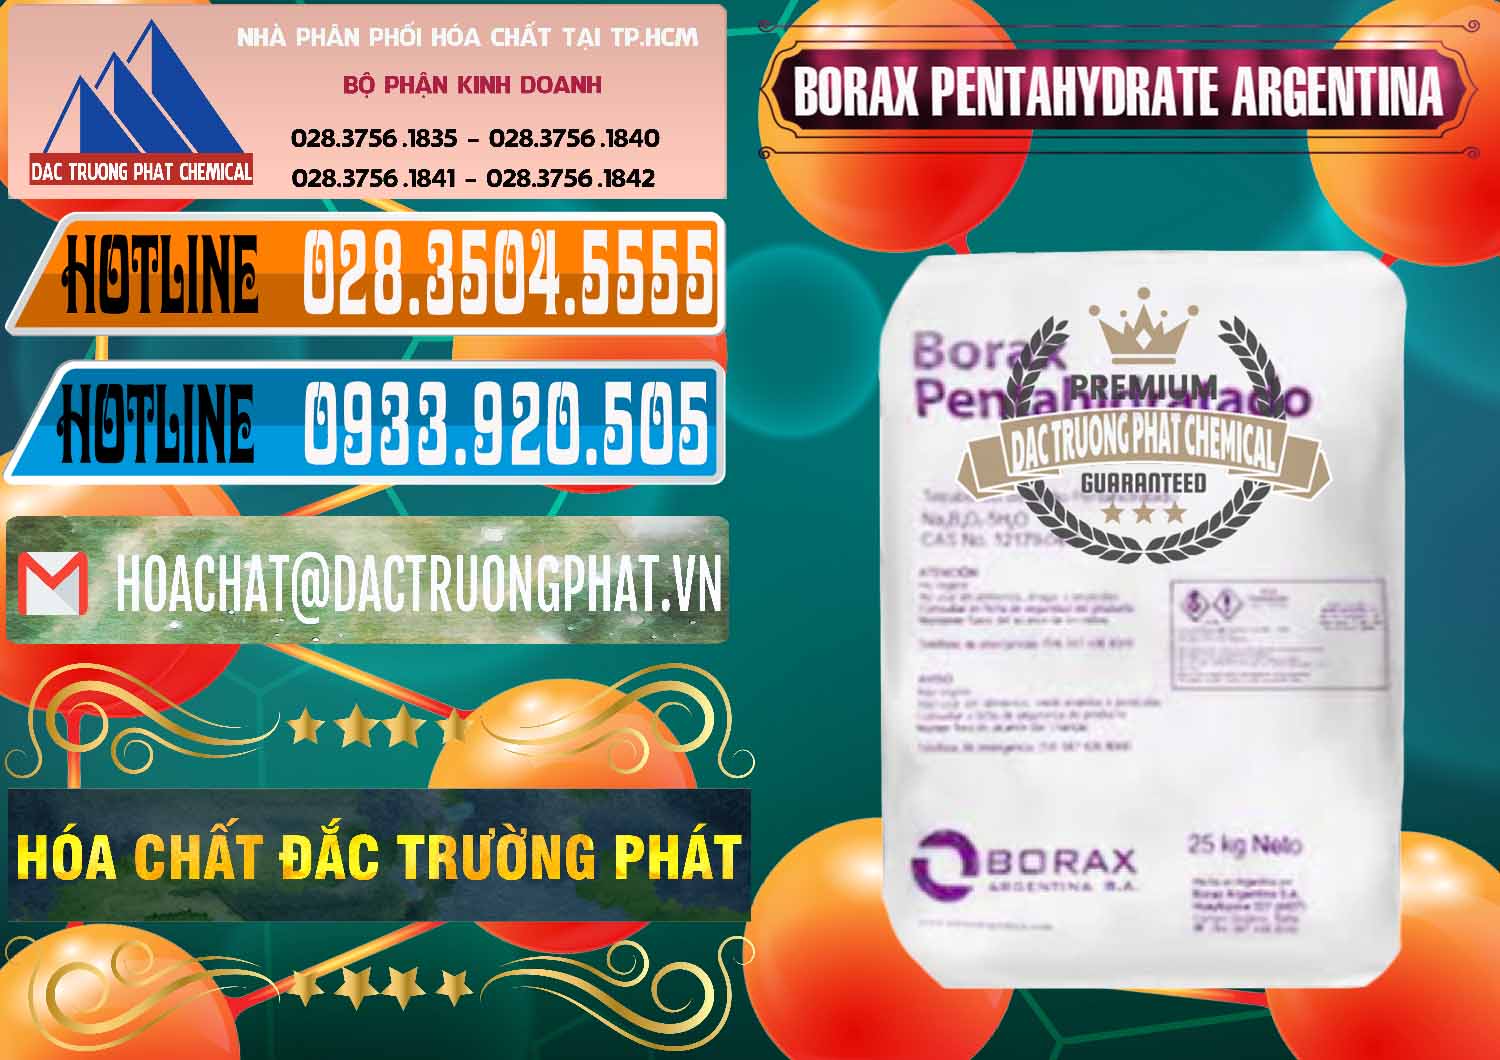 Cty chuyên phân phối ( bán ) Borax Pentahydrate Argentina - 0447 - Nơi chuyên bán & phân phối hóa chất tại TP.HCM - stmp.net